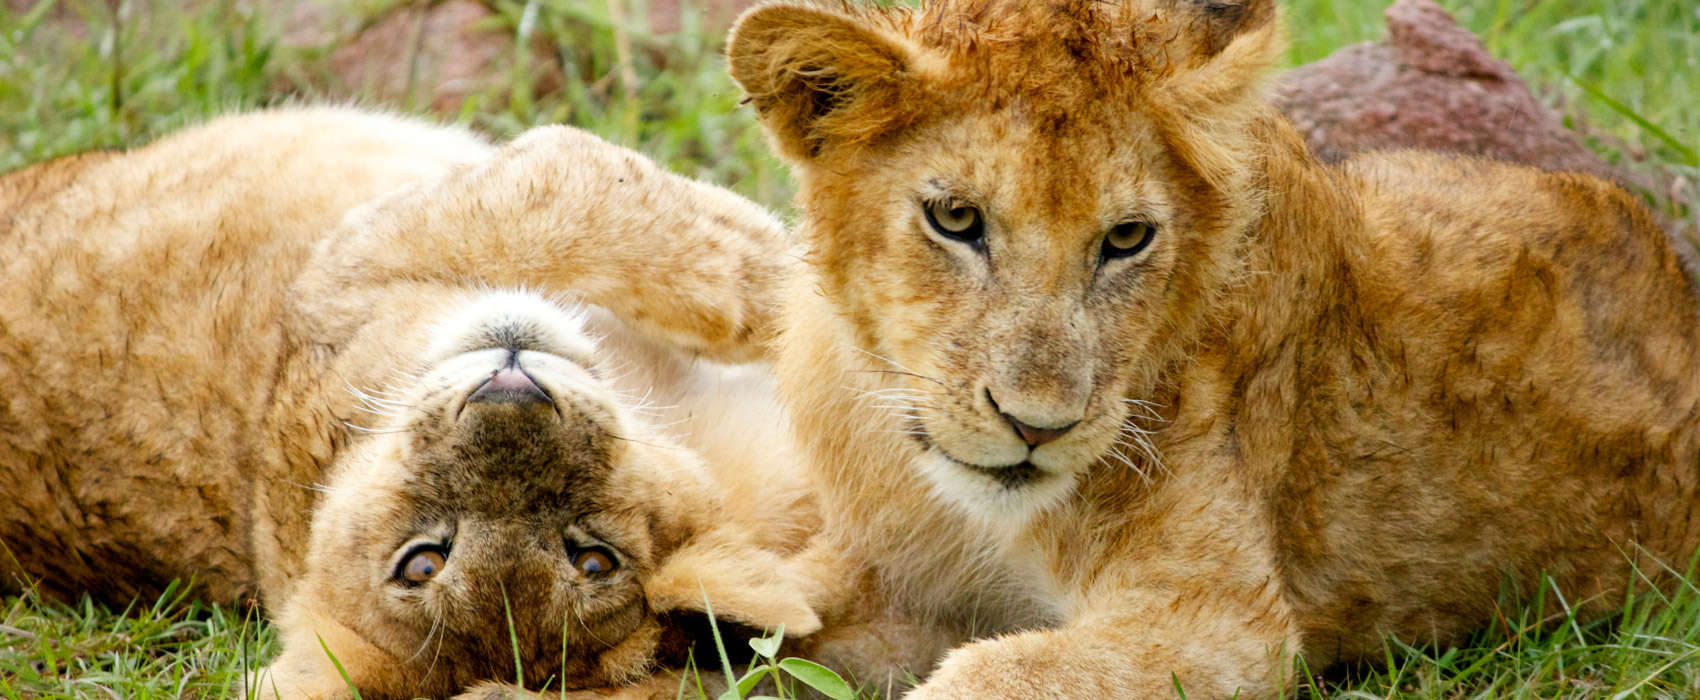 African Serengeti National Park Safari lion cubs